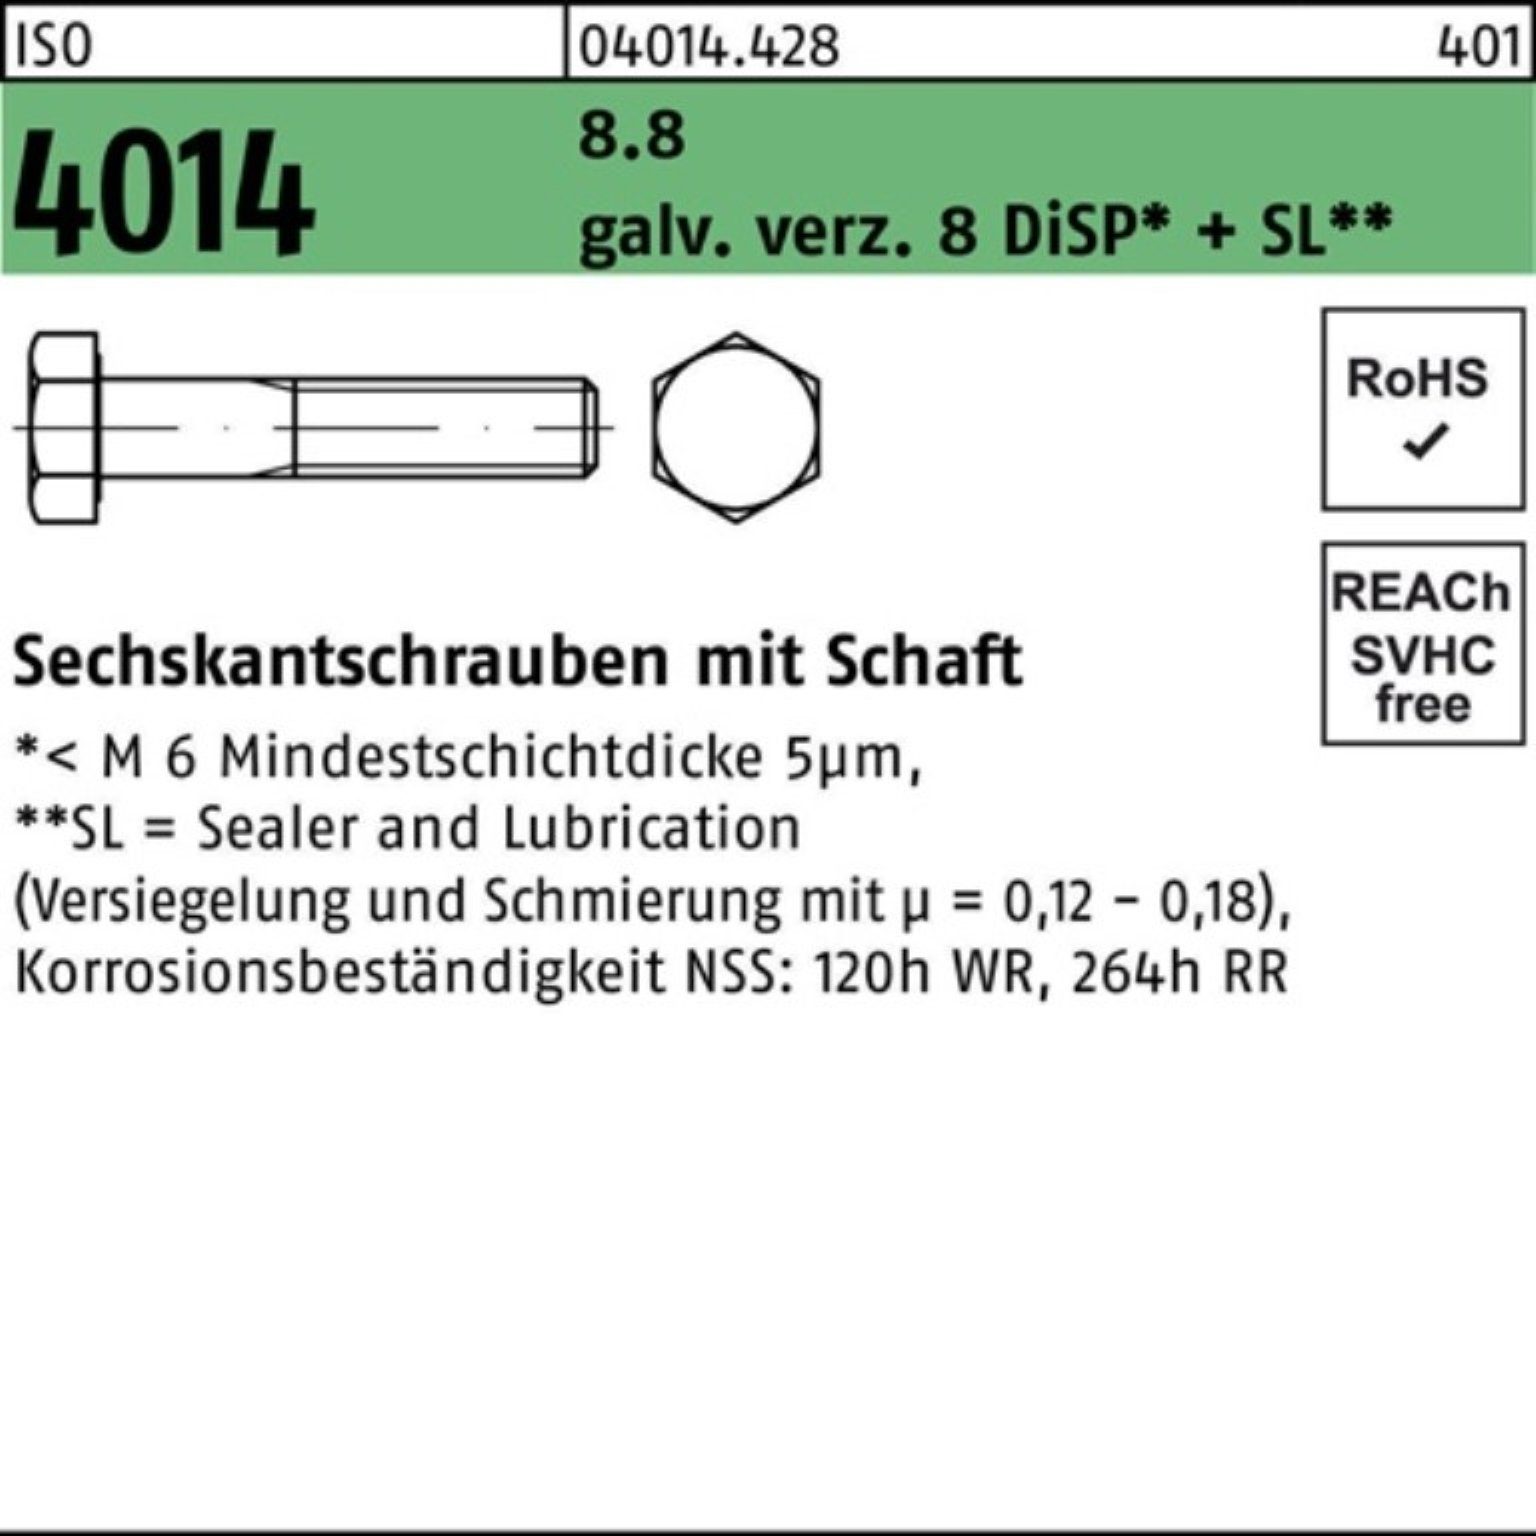 Bufab Sechskantschraube 100er Schaft 8 ISO M6x90 Pack 4014 8.8 galv.verz. Sechskantschraube Di